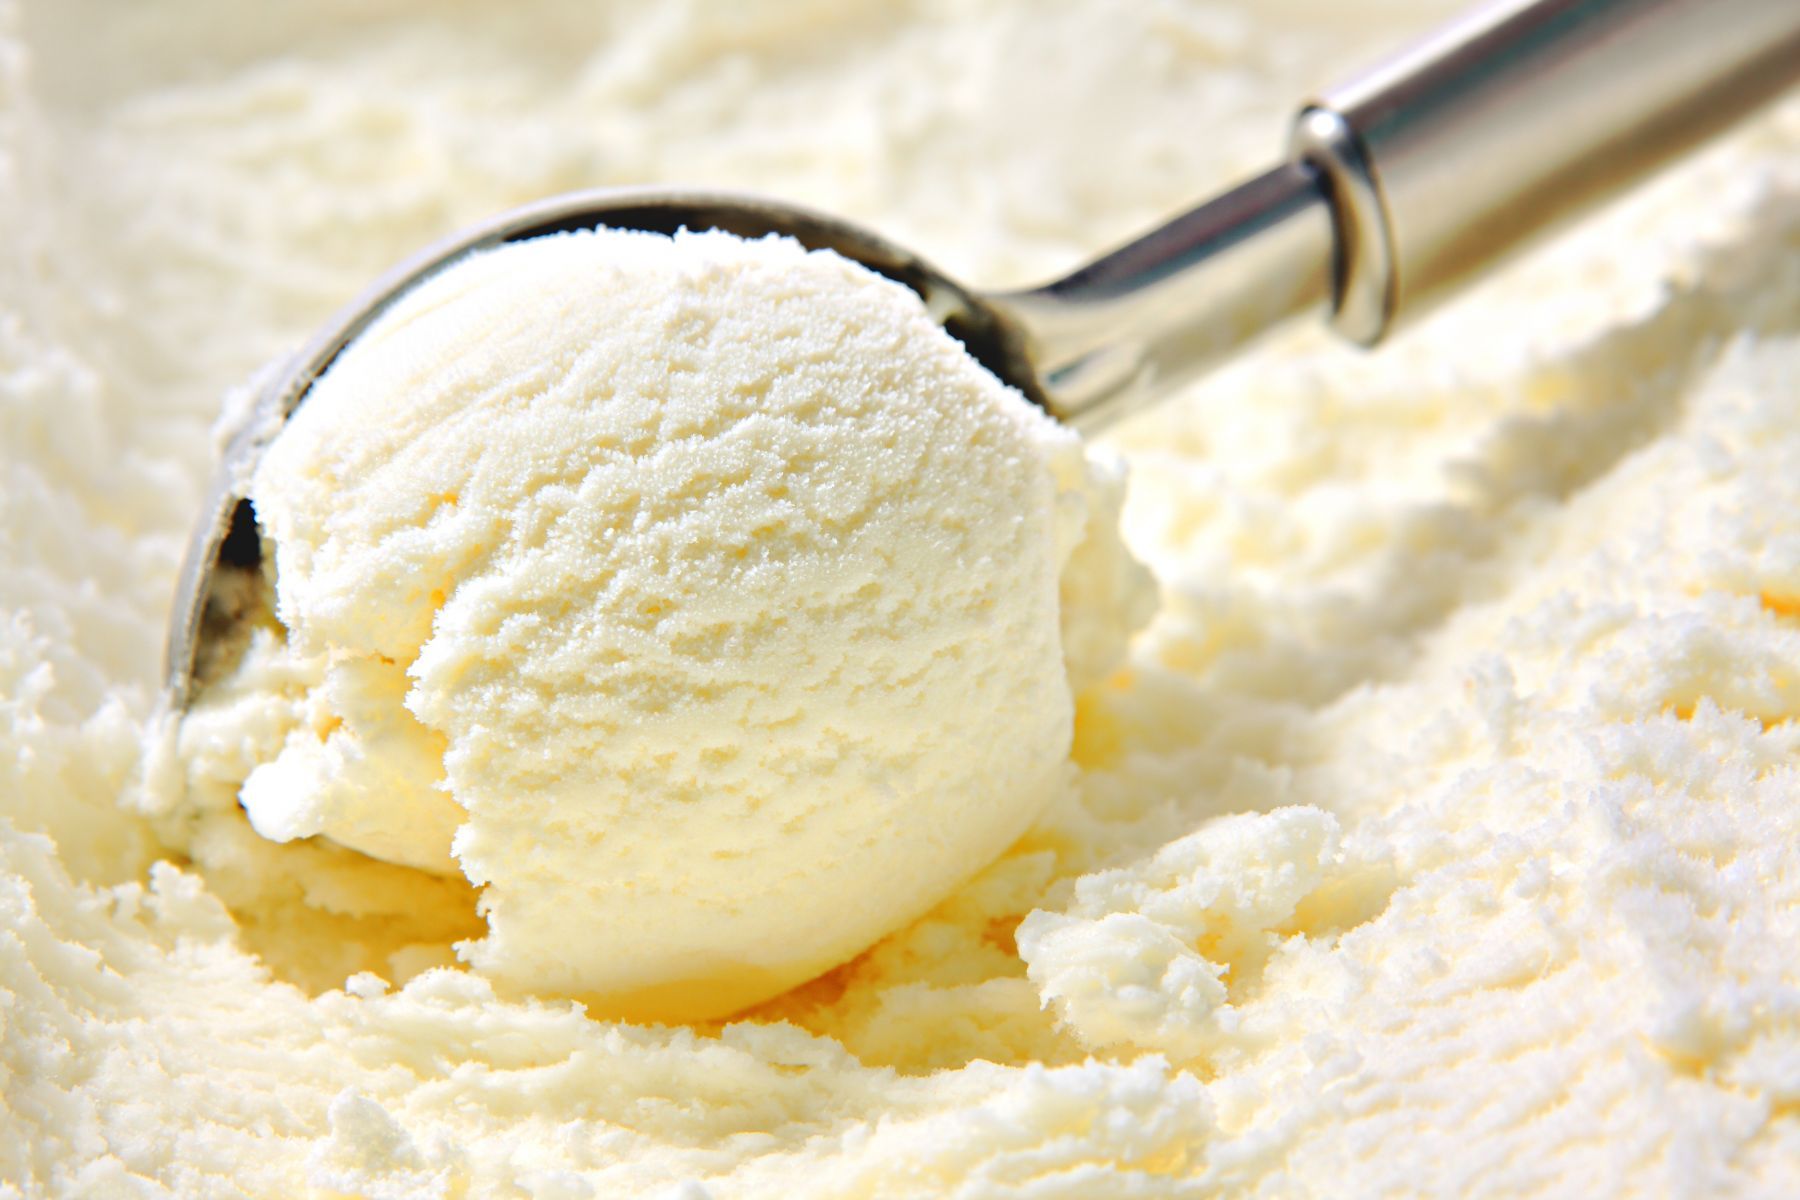 好想来一支！日本发明《让冰淇淋变软的汤匙》挖得动冰还能变成冰淇淋！ - itotii